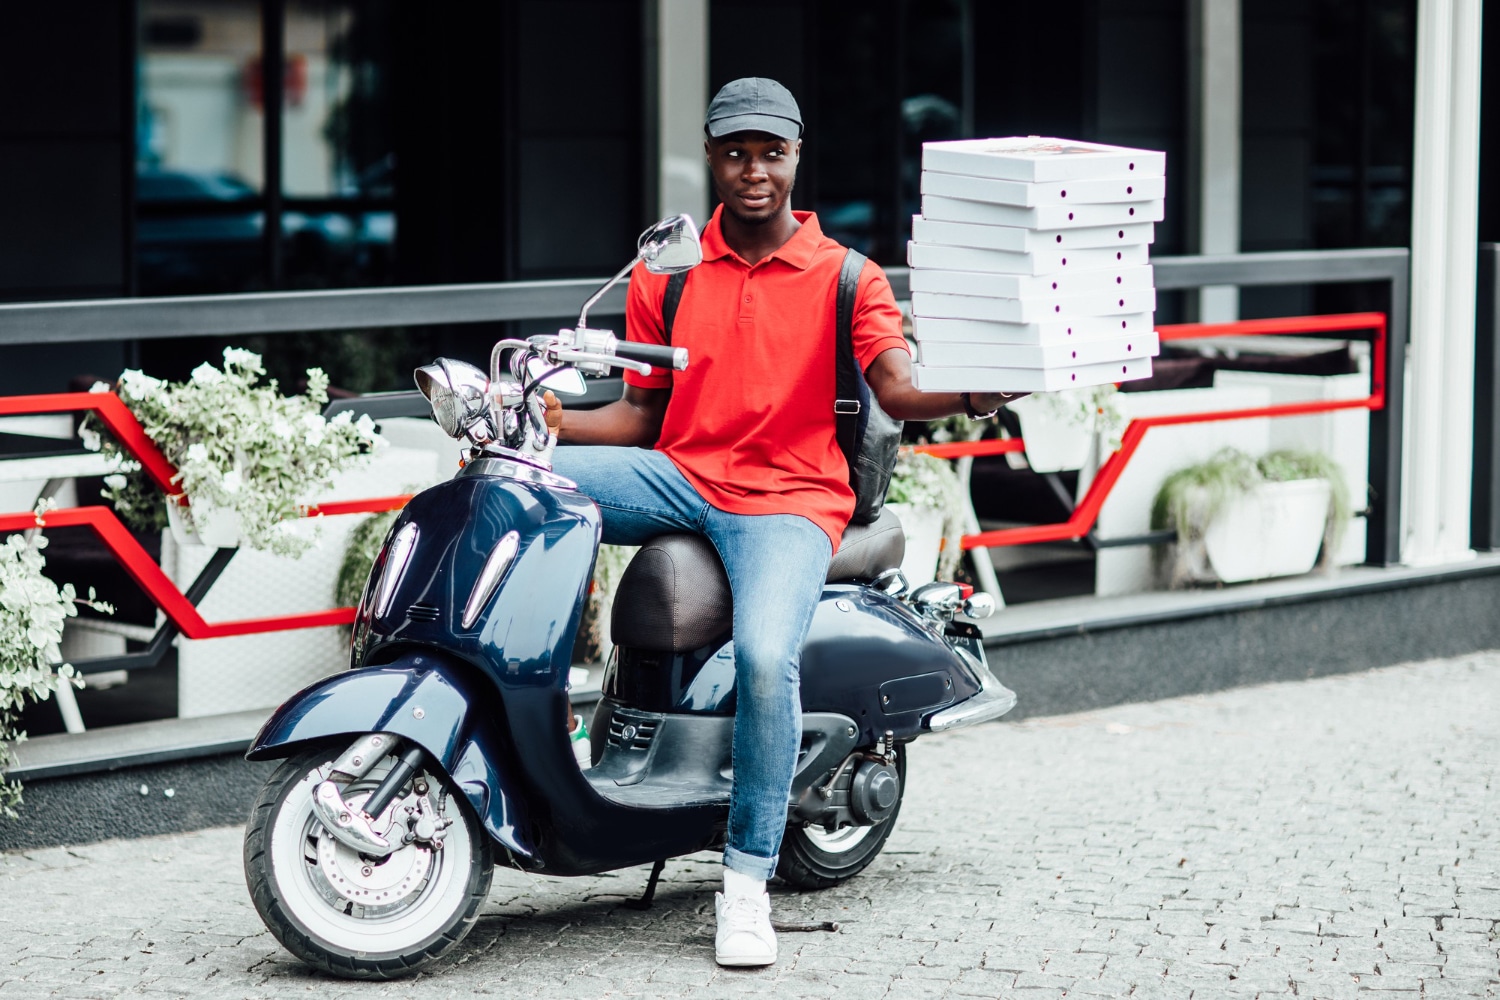 motoboy sentado na moto tentando equilibrar várias caixas de pizza